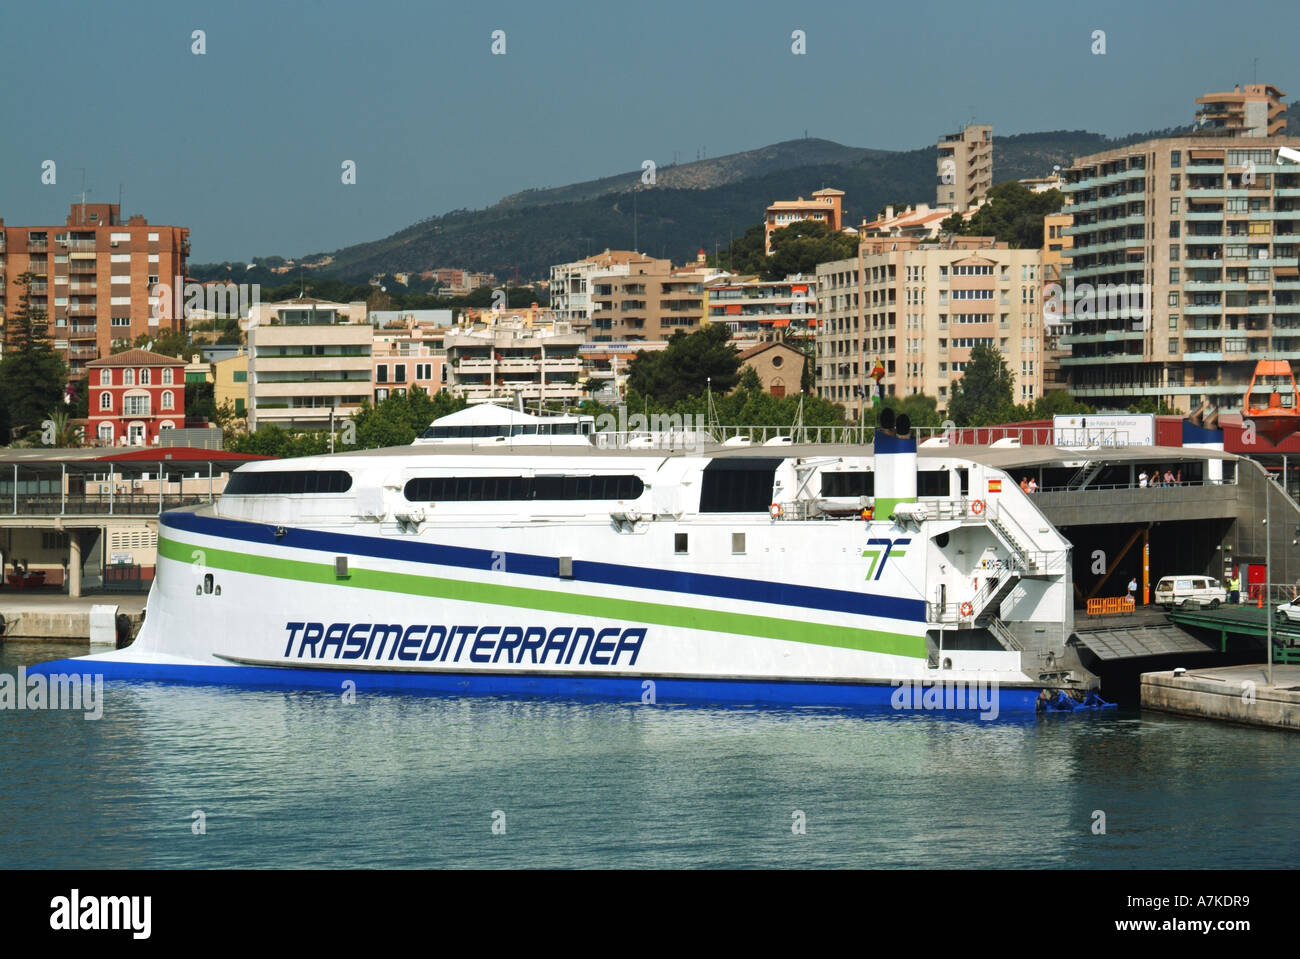 El puerto de Palma catamarán ferry Trasmediterranea Fotografía de stock -  Alamy